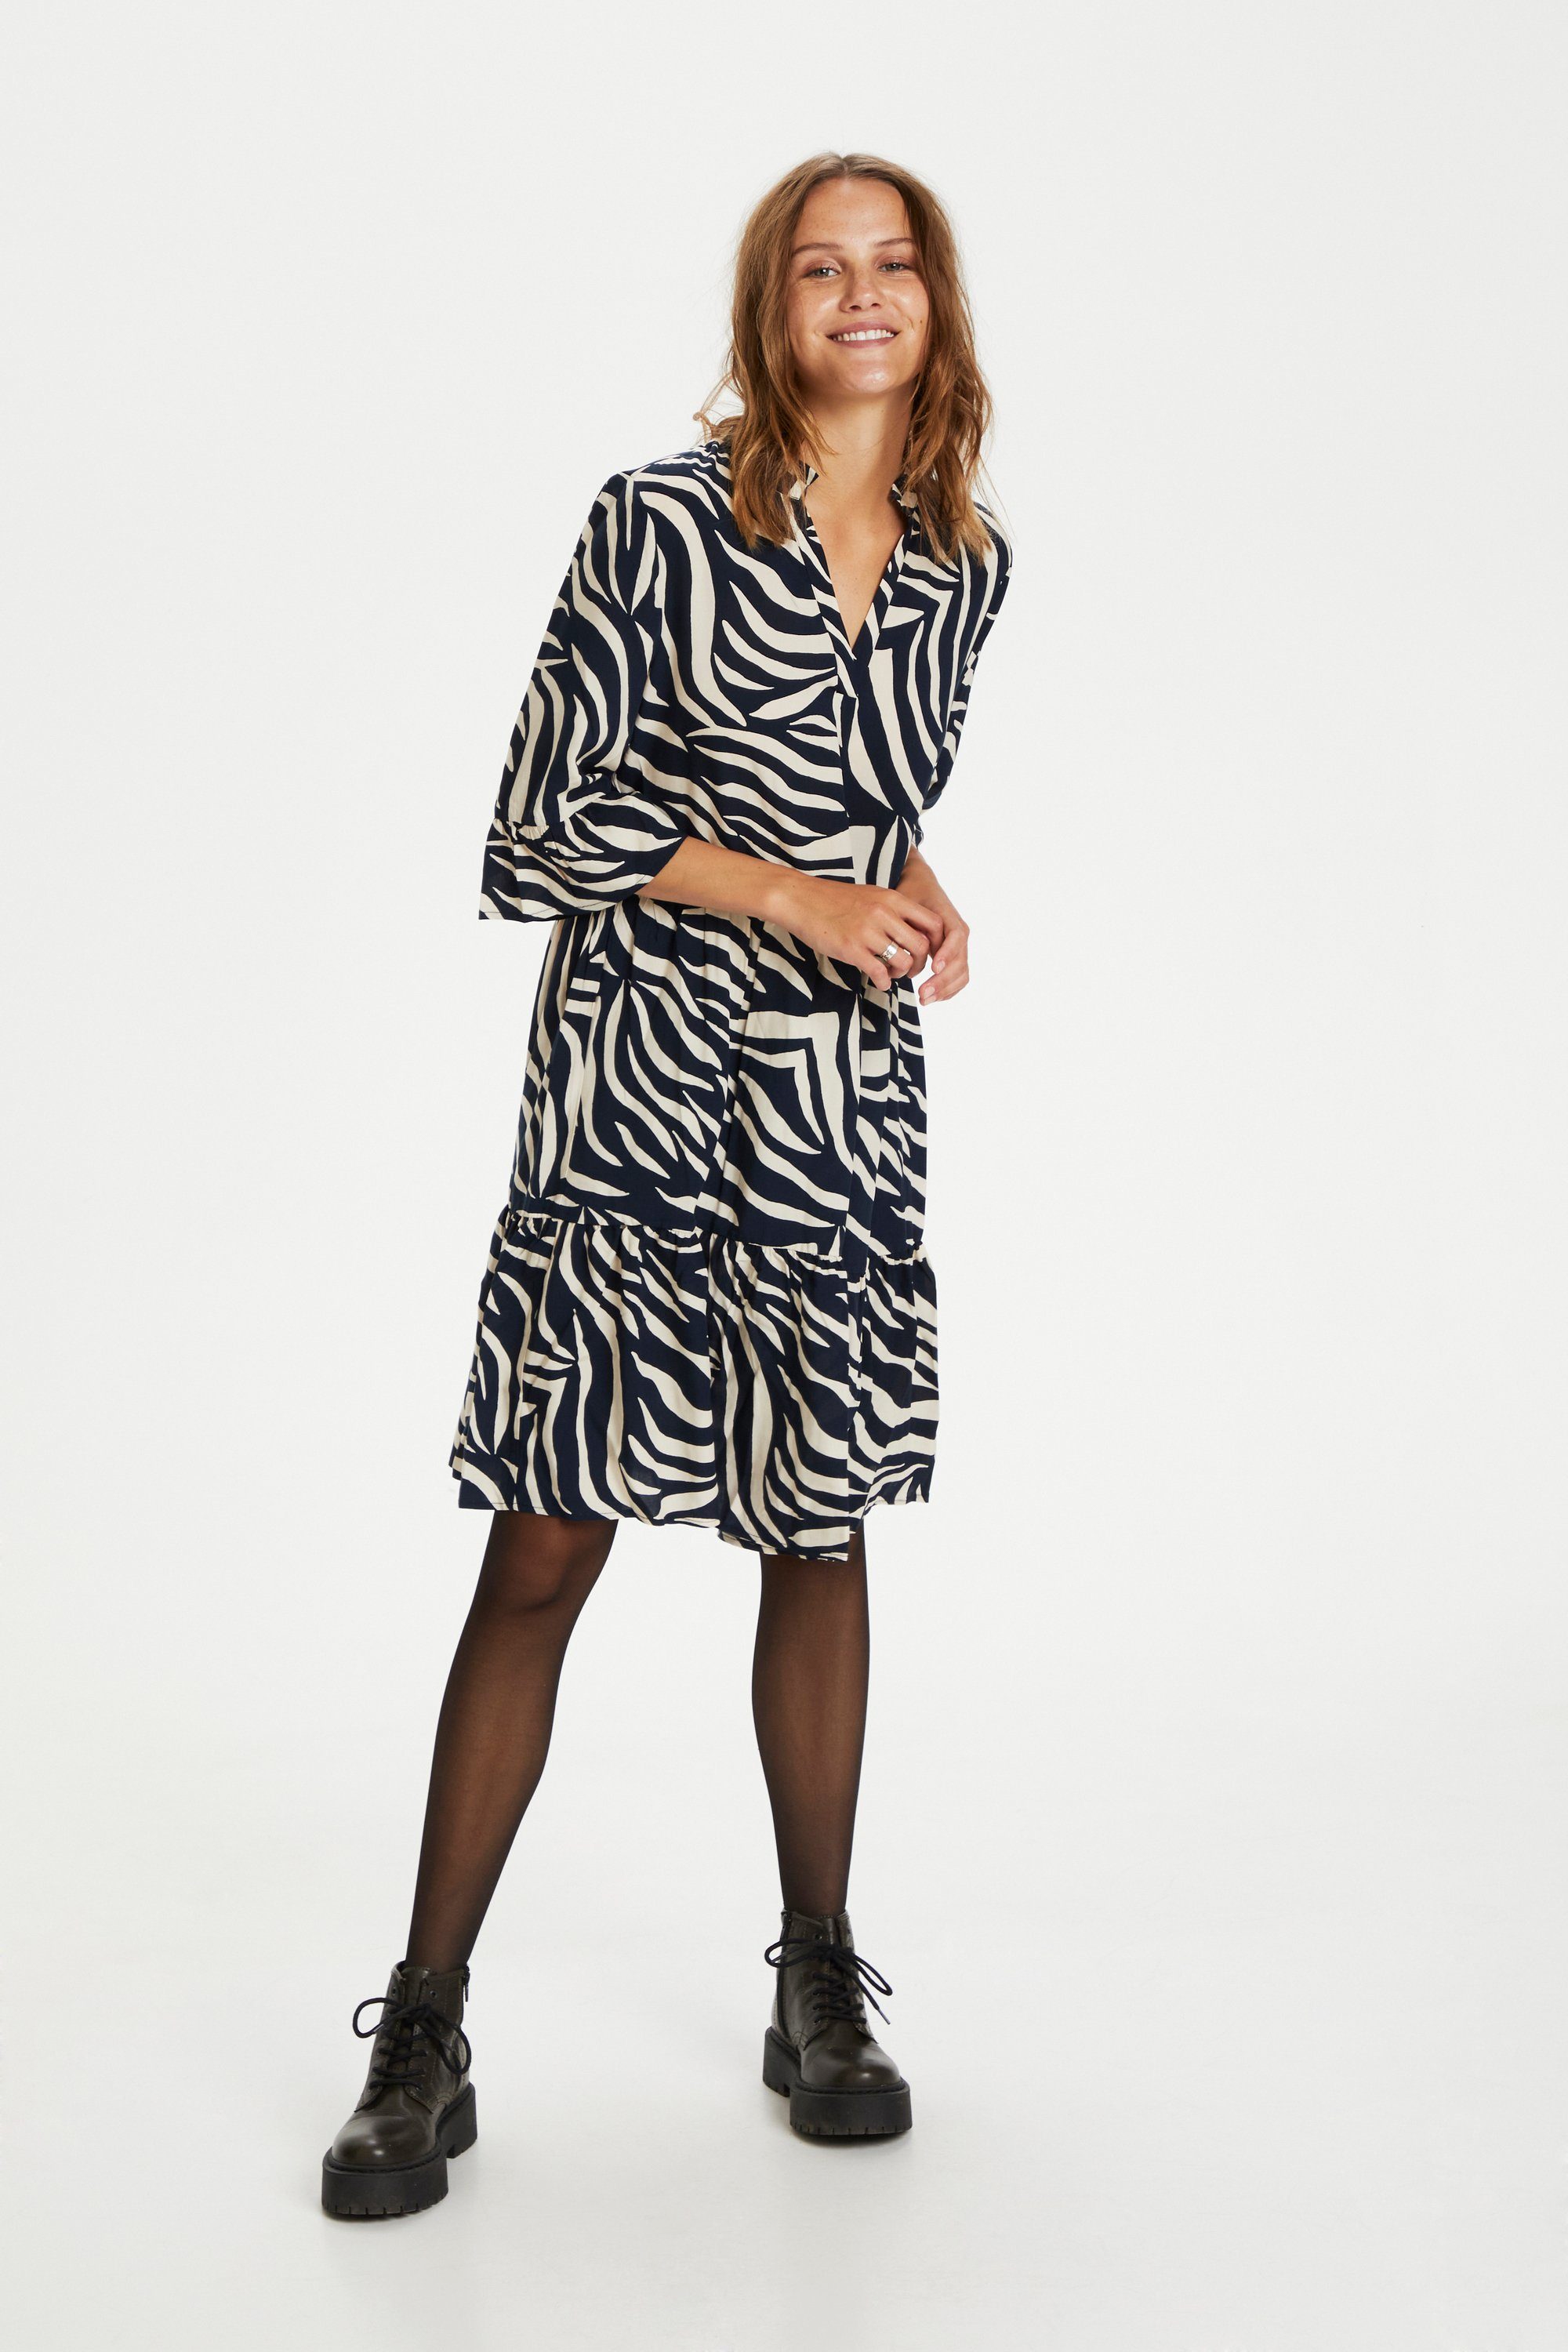 Saint Tropez Jerseykleid Skin Eclipse EdaSZ Total Dress Zebra